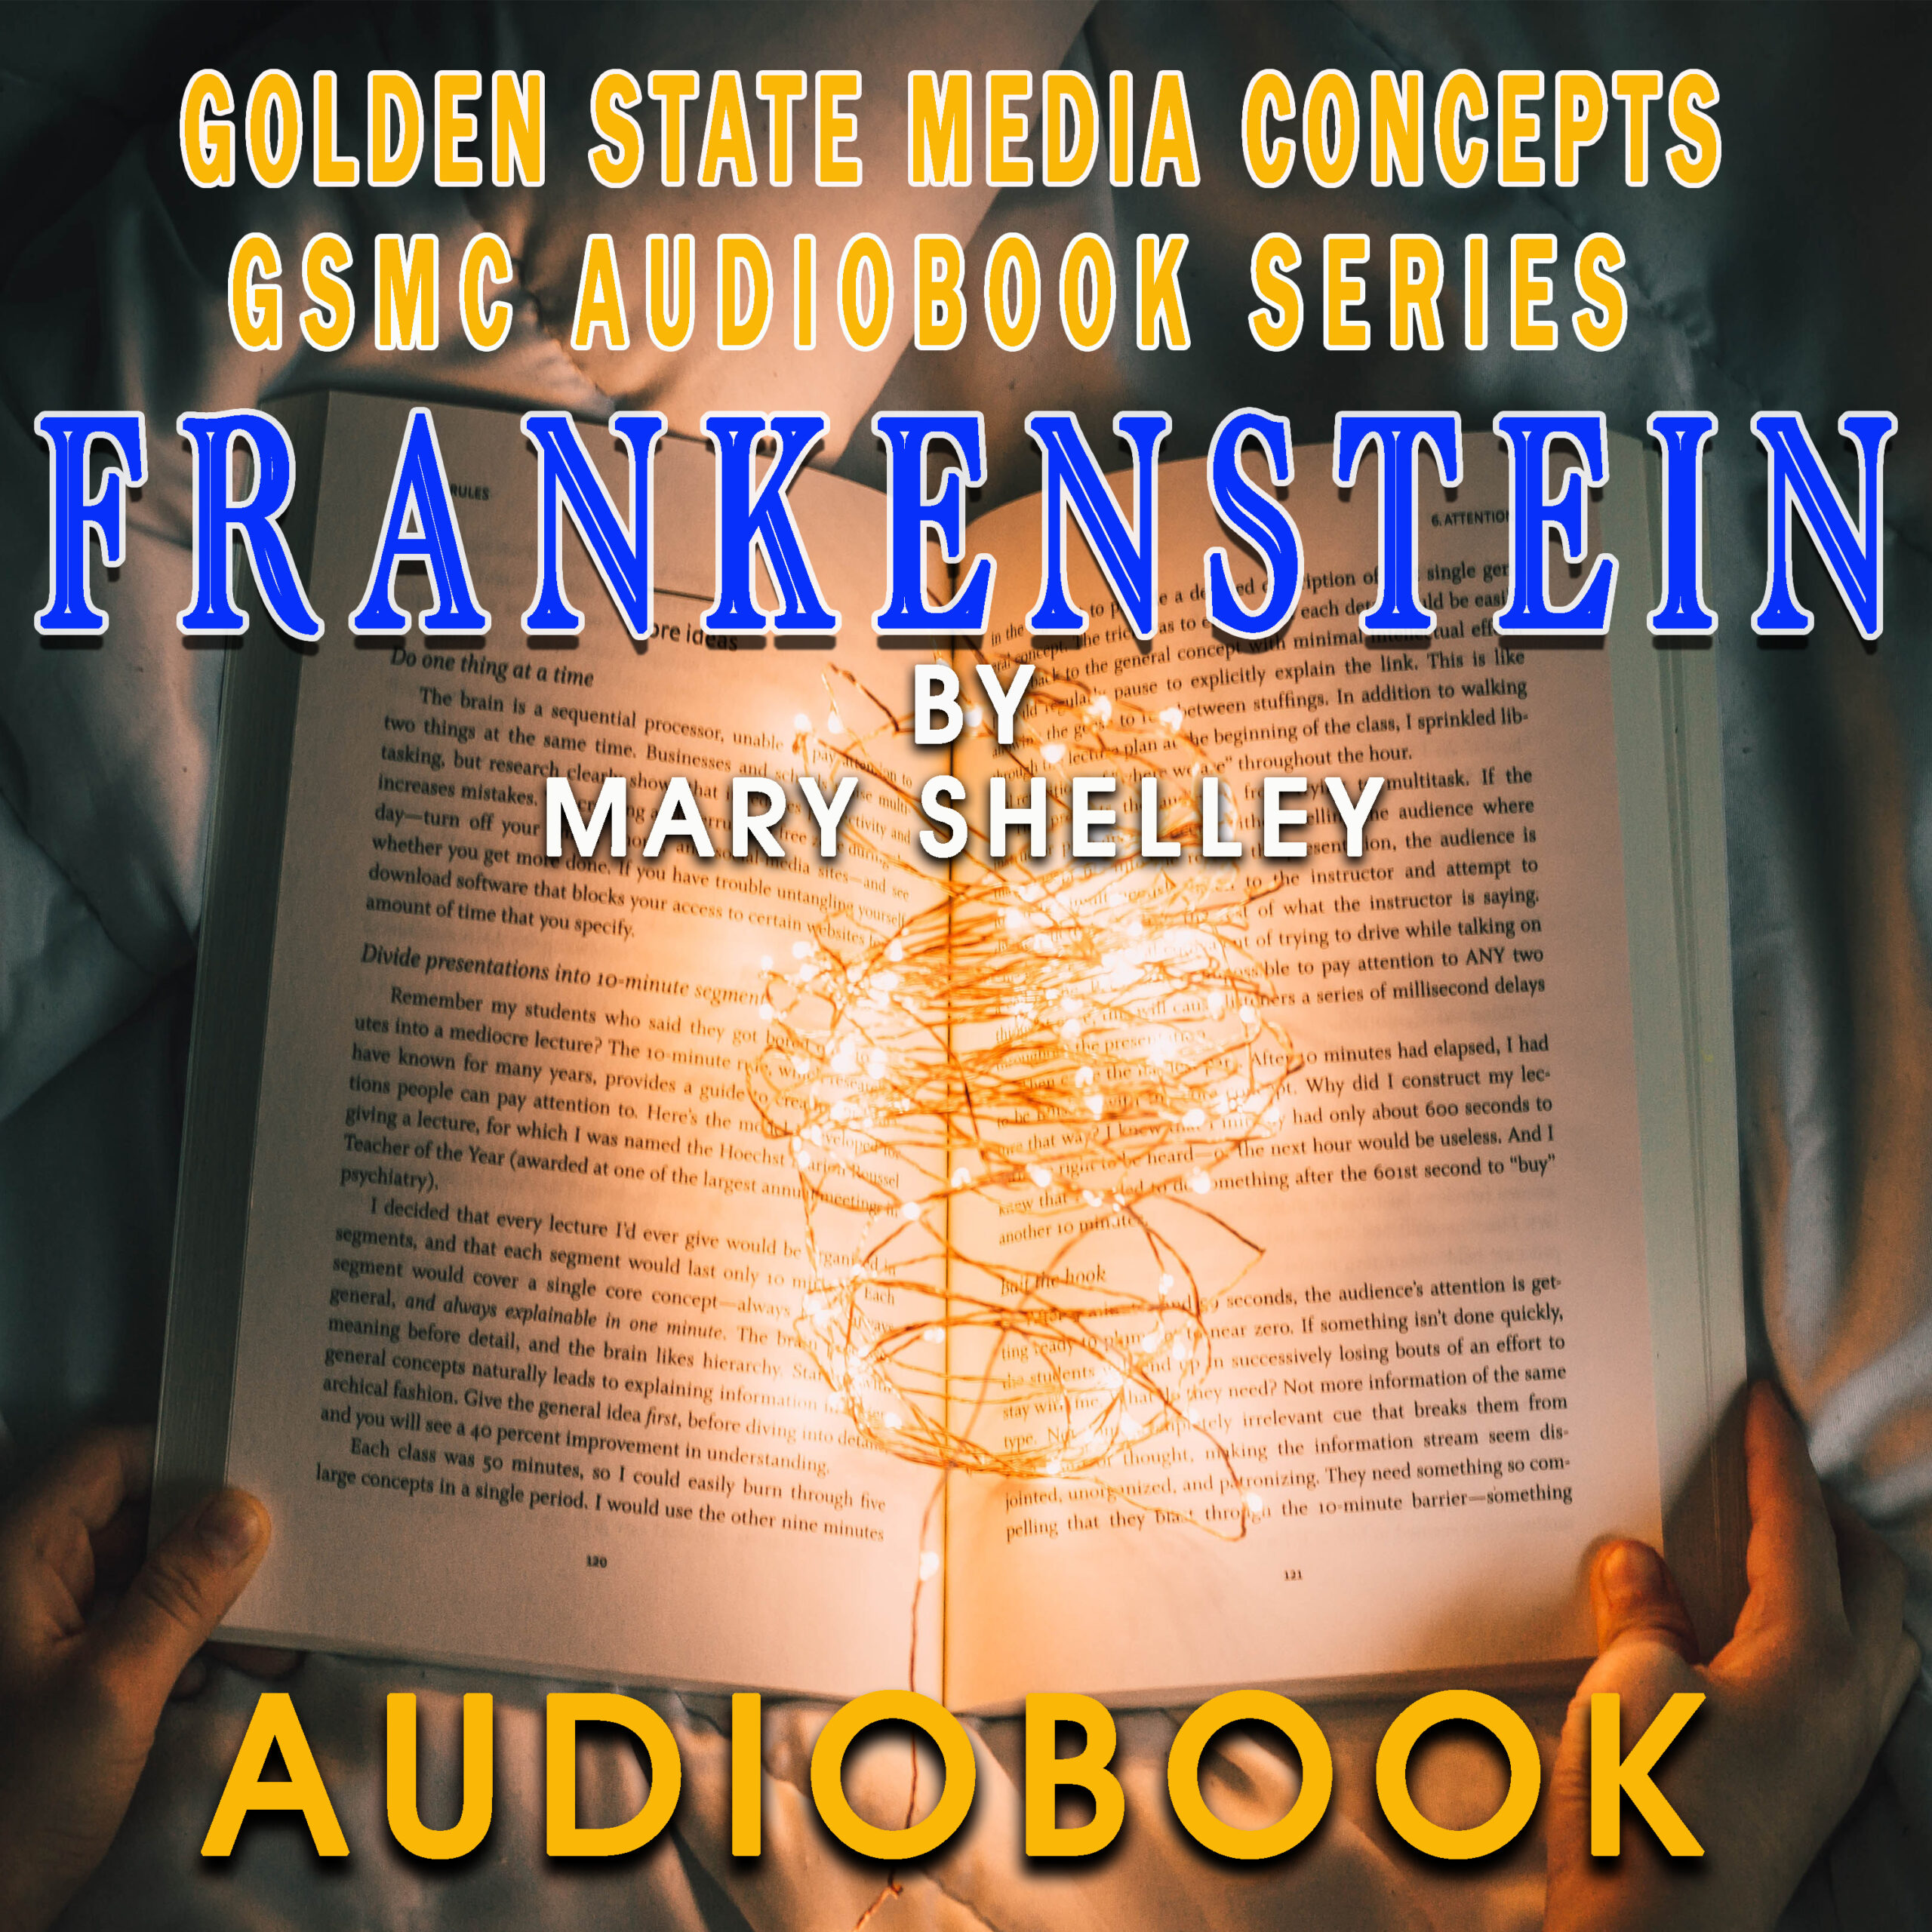 GSMC Audiobook Series: Frankenstein